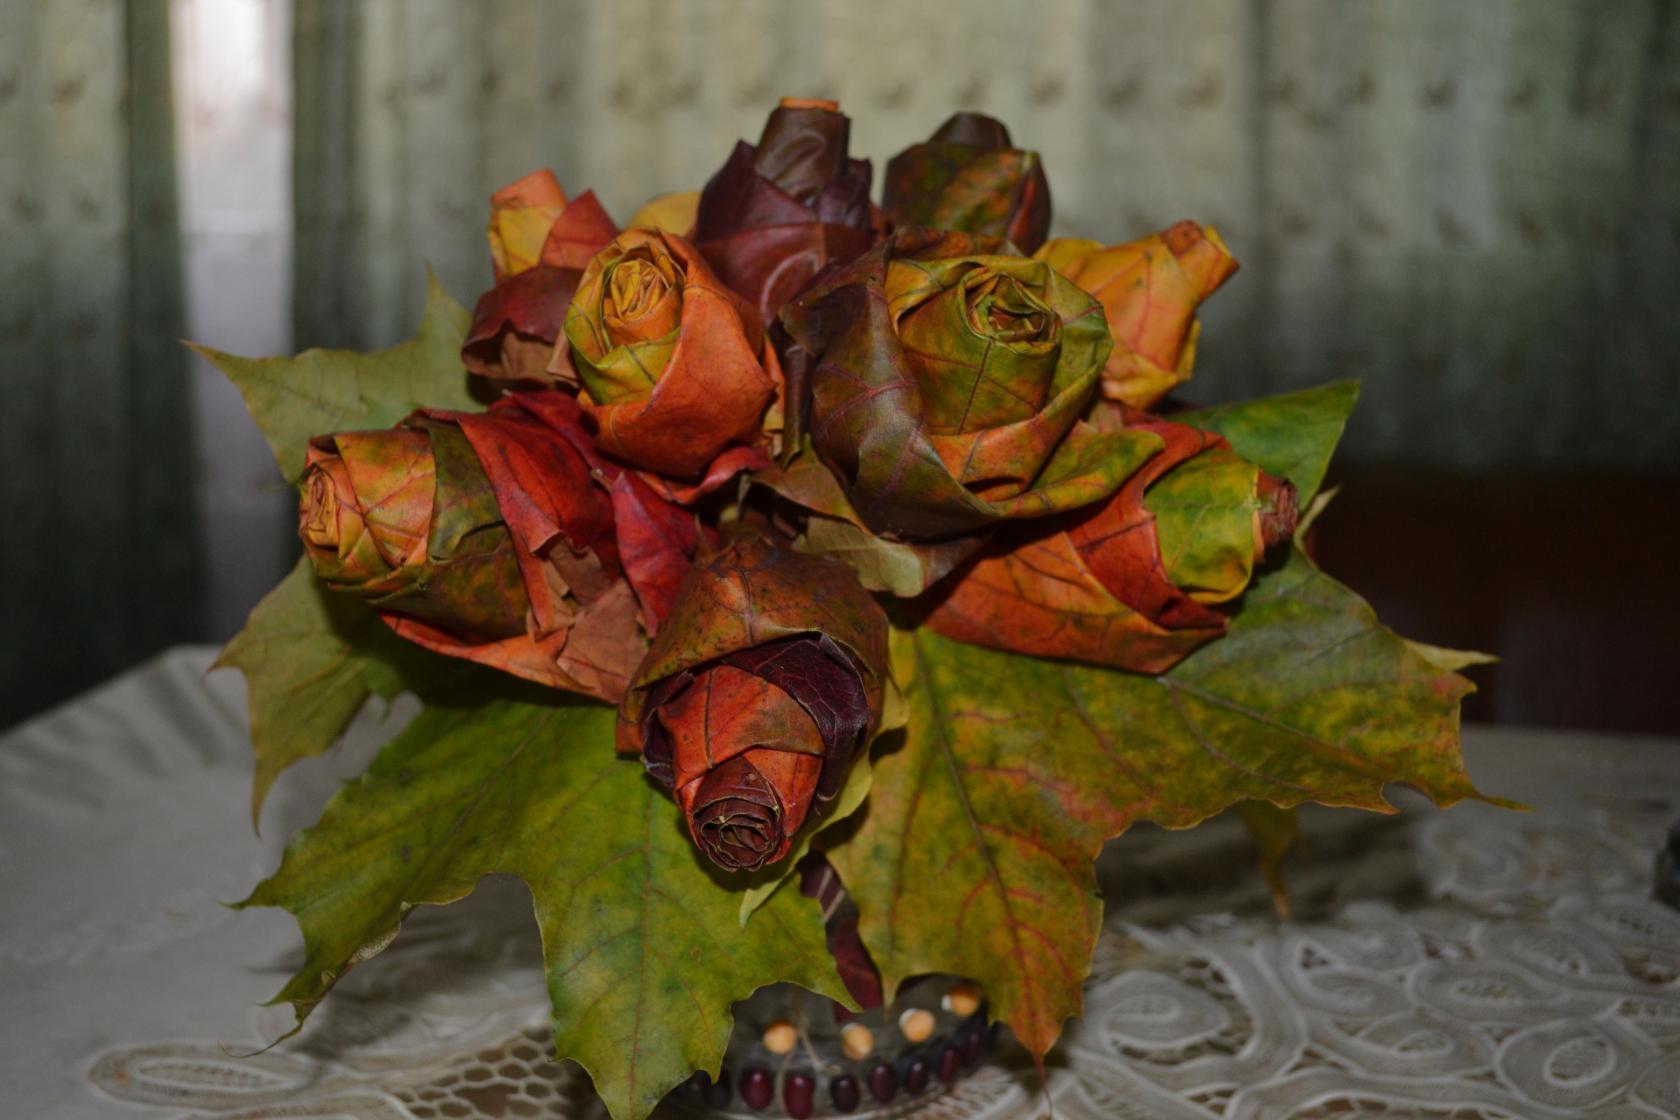 Цветы из листьев клена мастер класс: Розовый букет из листьев клена за 5 минут своими руками: мастер-класс с фото